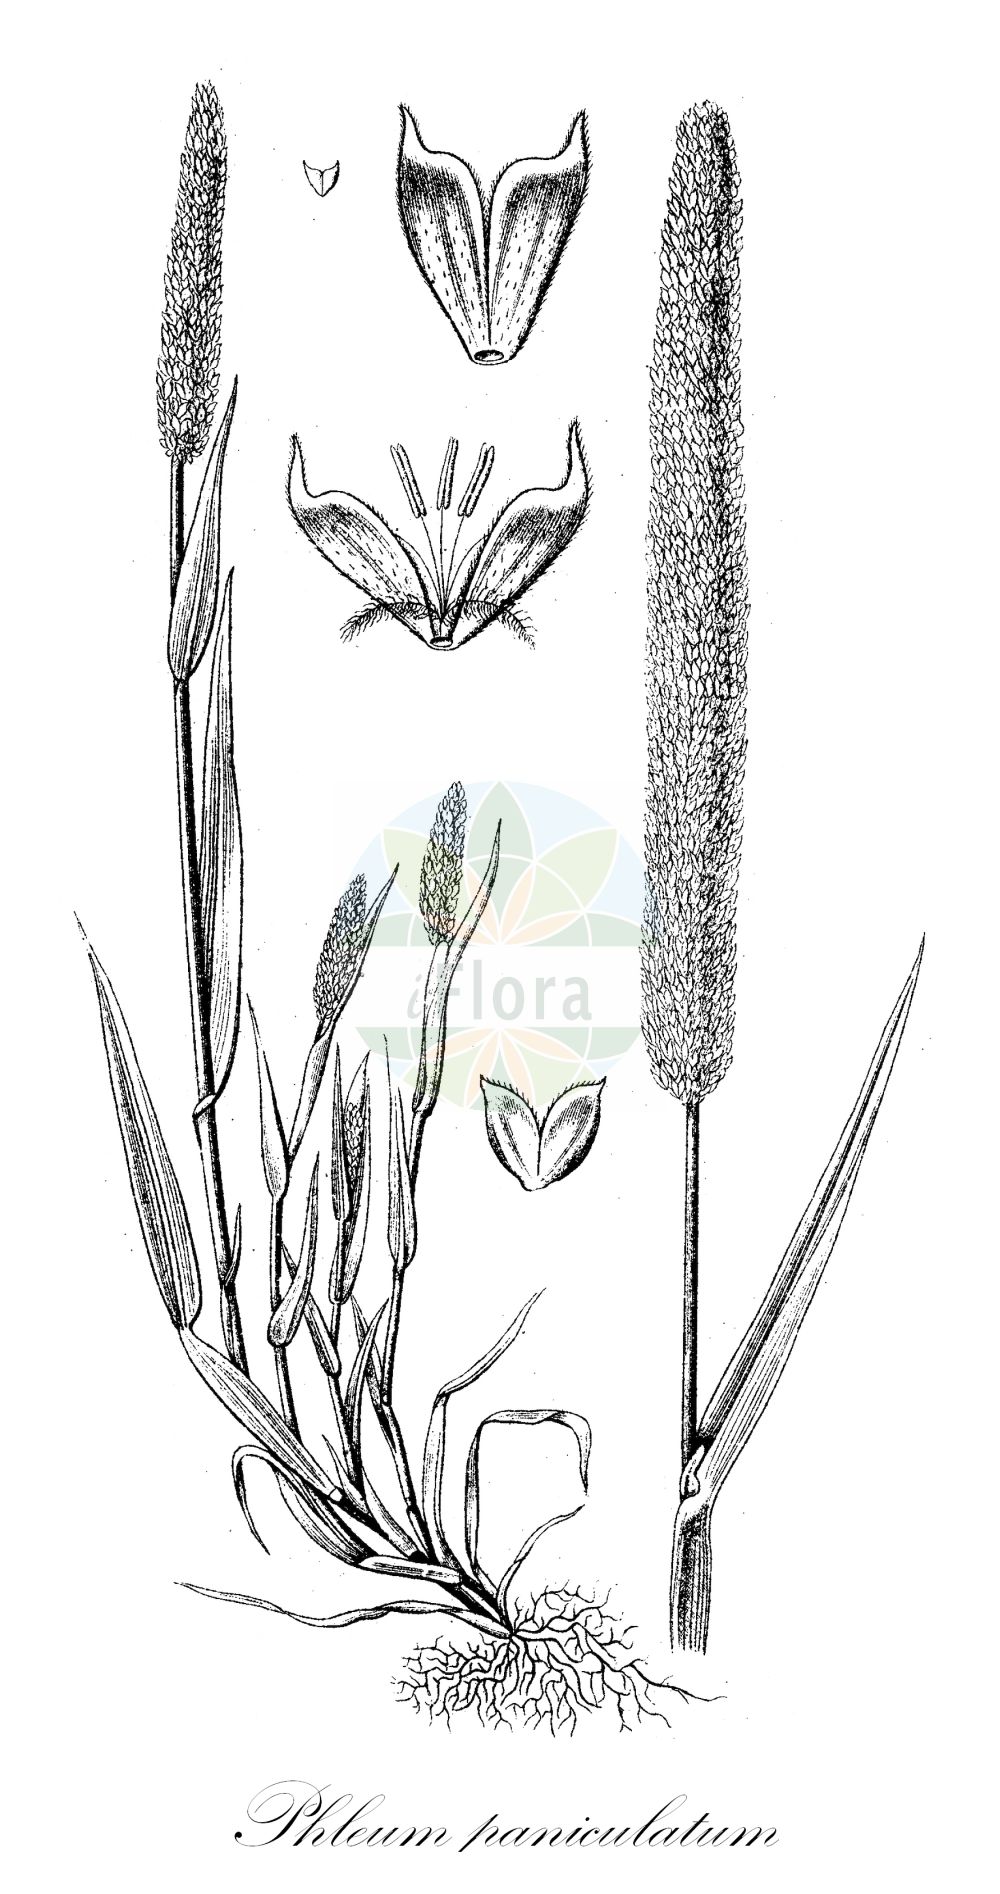 Historische Abbildung von Phleum paniculatum (Rauhes Lieschgras - Panicled Cat's-tail). Das Bild zeigt Blatt, Bluete, Frucht und Same. ---- Historical Drawing of Phleum paniculatum (Rauhes Lieschgras - Panicled Cat's-tail). The image is showing leaf, flower, fruit and seed.(Phleum paniculatum,Rauhes Lieschgras,Panicled Cat's-tail,Phleum asperum,Phleum paniculatum,Rauhes Lieschgras,Rispen-Lieschgras,Rispiges Lieschgras,Panicled Cat's-tail,Panicled Catstail,British Timothy,Phleum,Lieschgras,Timothy,Poaceae,Süßgräser,Grass family,Blatt,Bluete,Frucht,Same,leaf,flower,fruit,seed,Sturm (1796f))